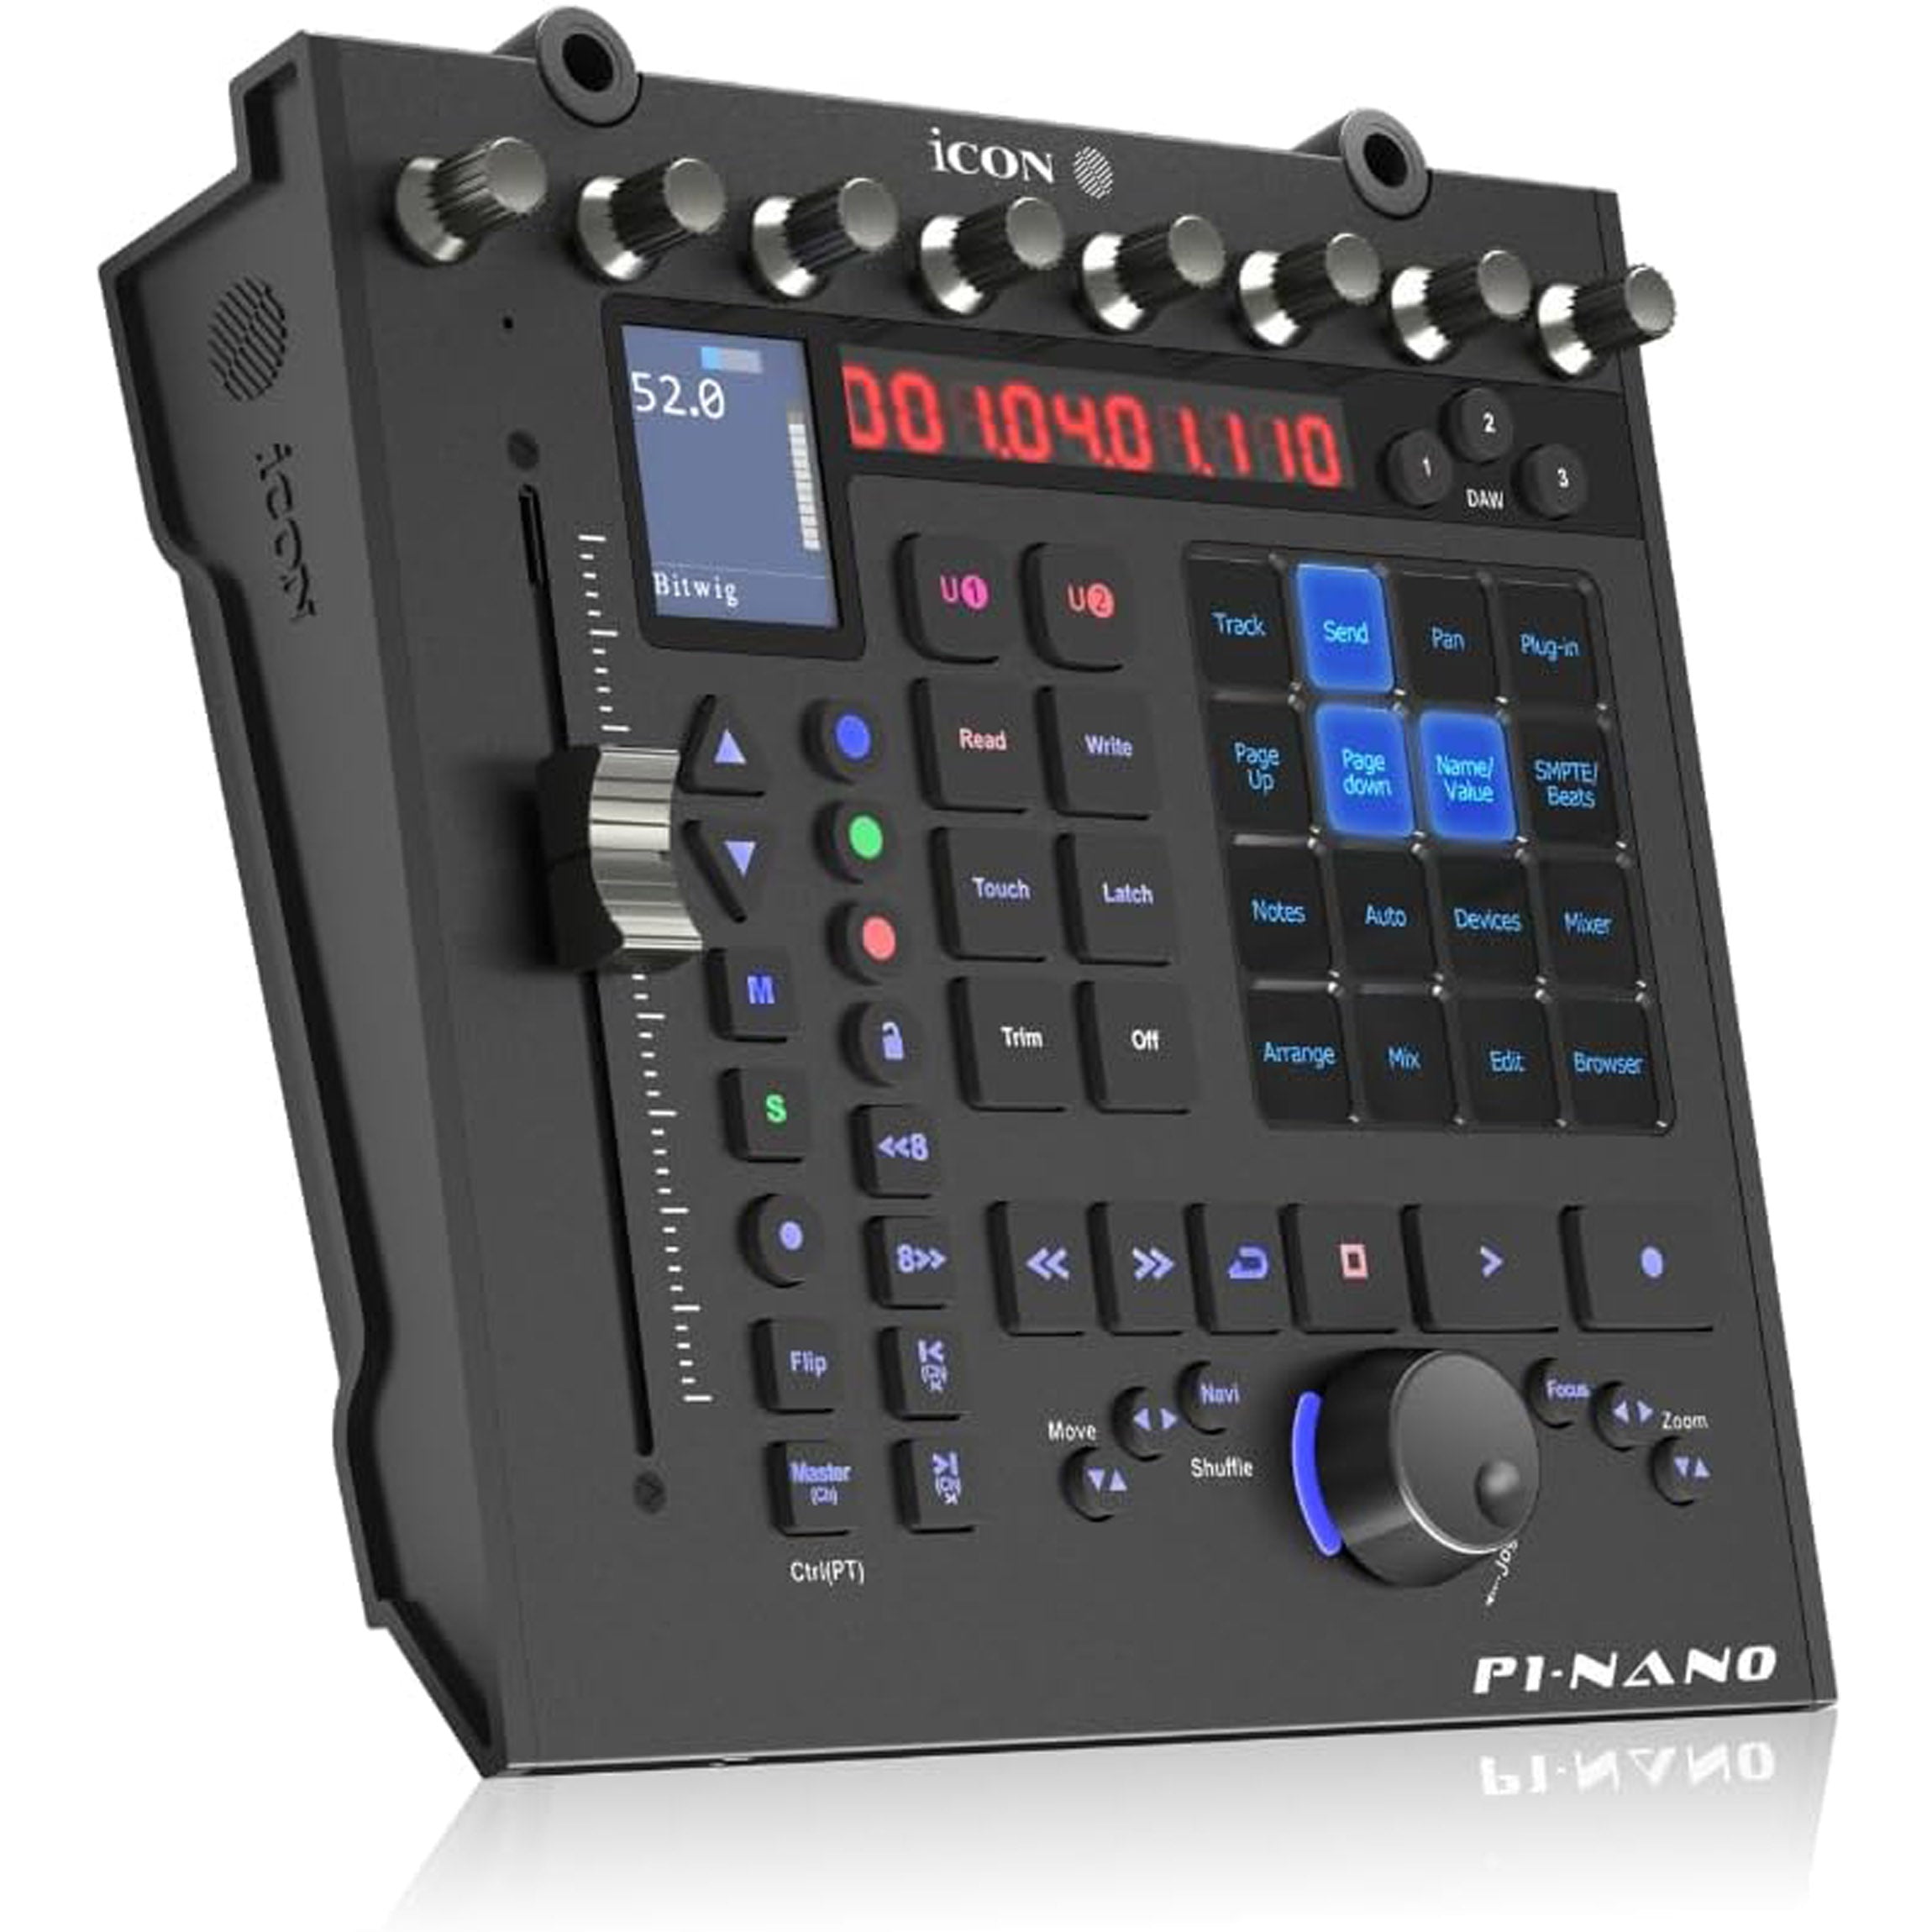 Icon P1-Nano DAW Control Surface – Alto Music